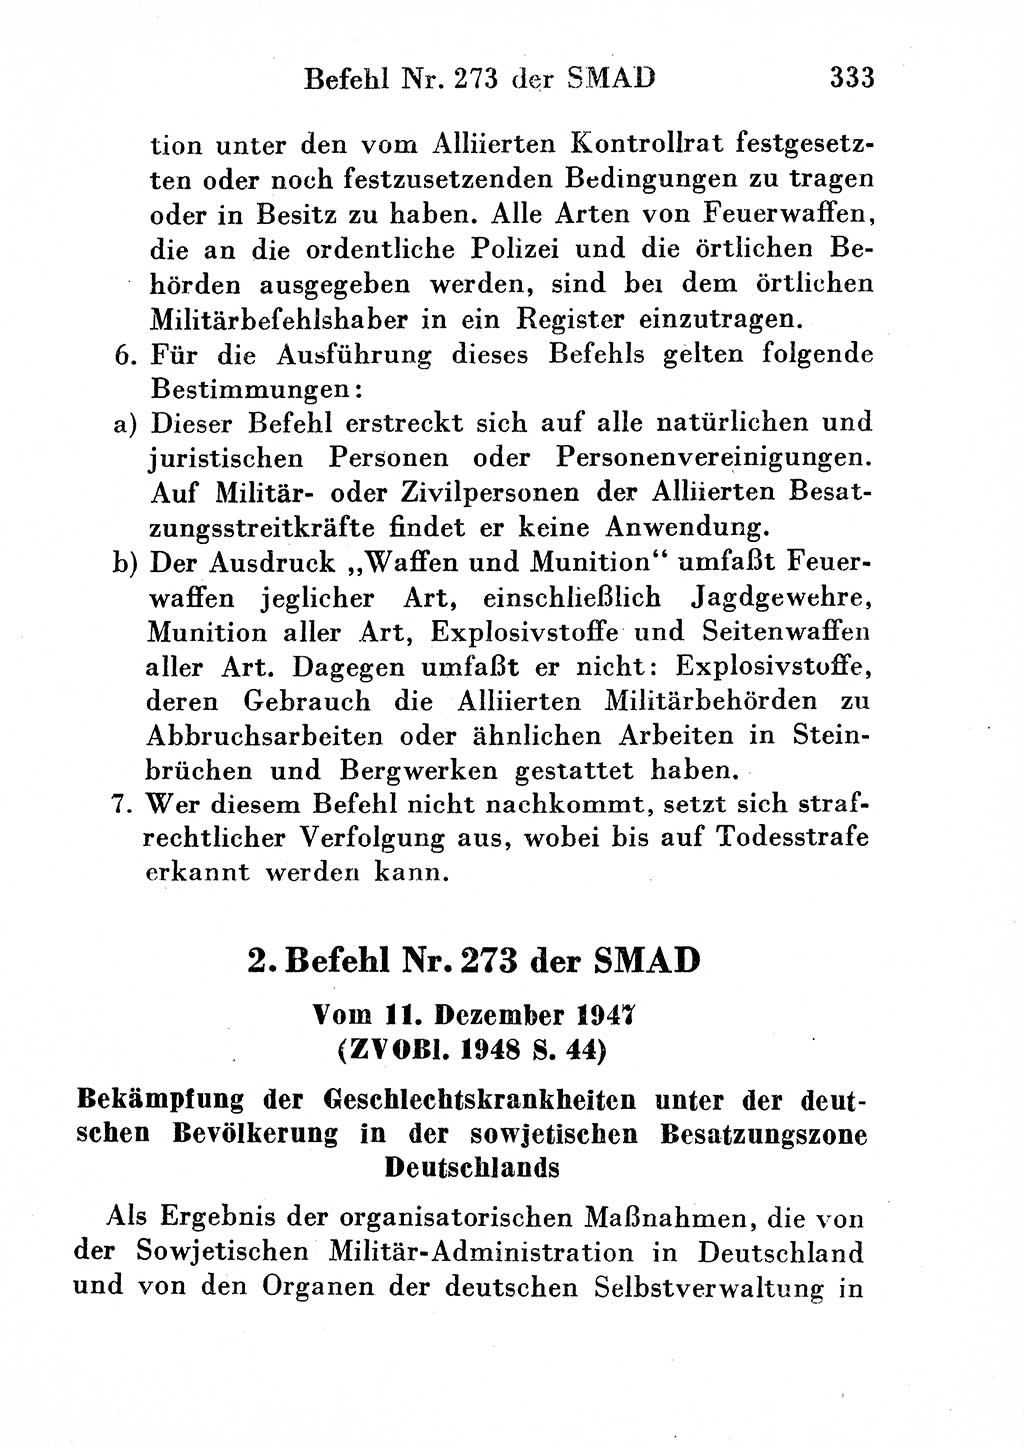 Strafgesetzbuch (StGB) und andere Strafgesetze [Deutsche Demokratische Republik (DDR)] 1954, Seite 333 (StGB Strafges. DDR 1954, S. 333)